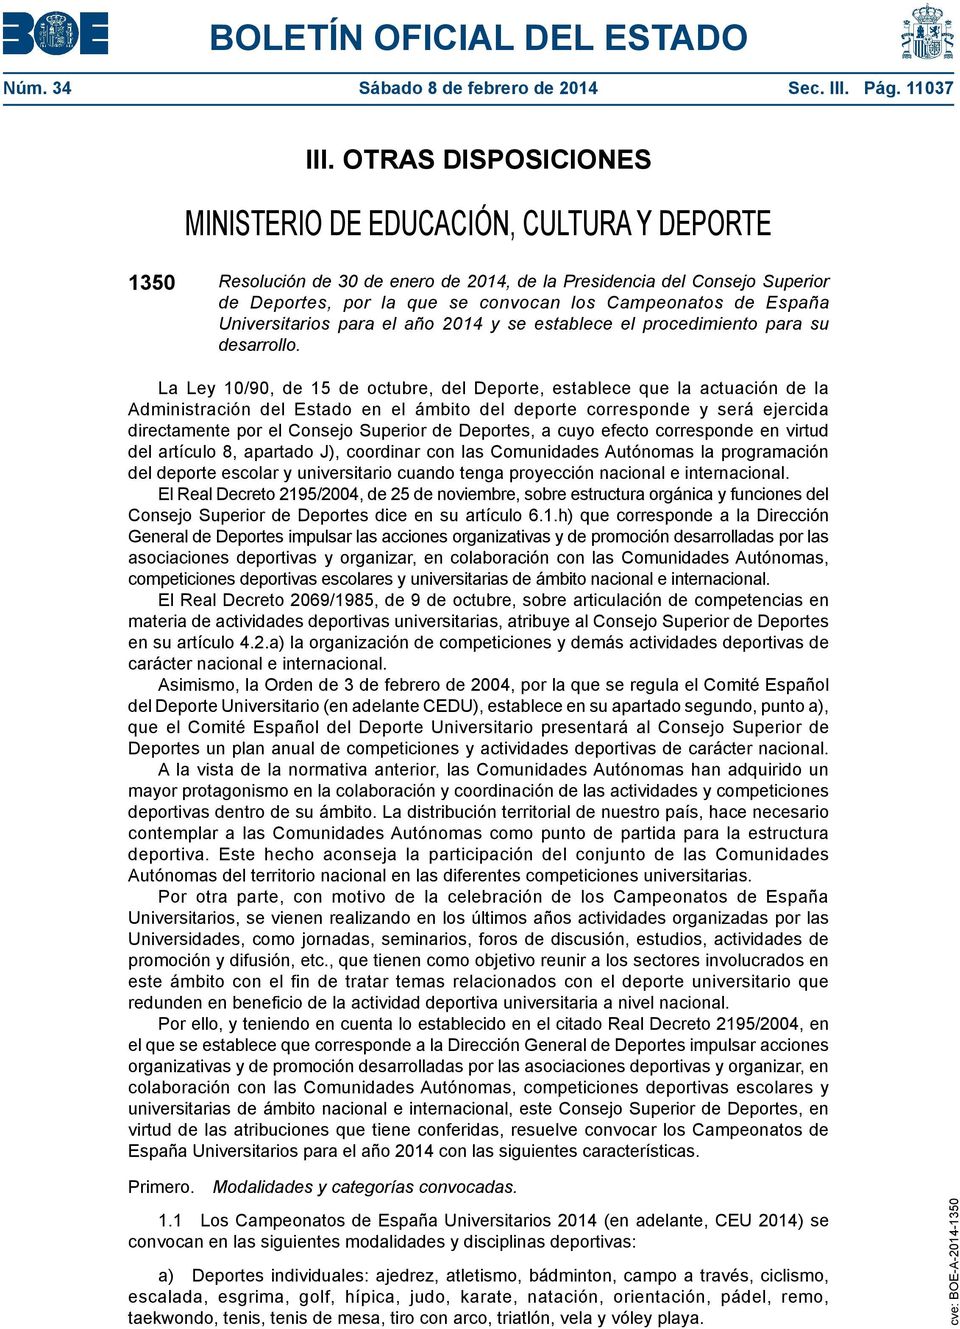 España Universitarios para el año 2014 y se establece el procedimiento para su desarrollo.